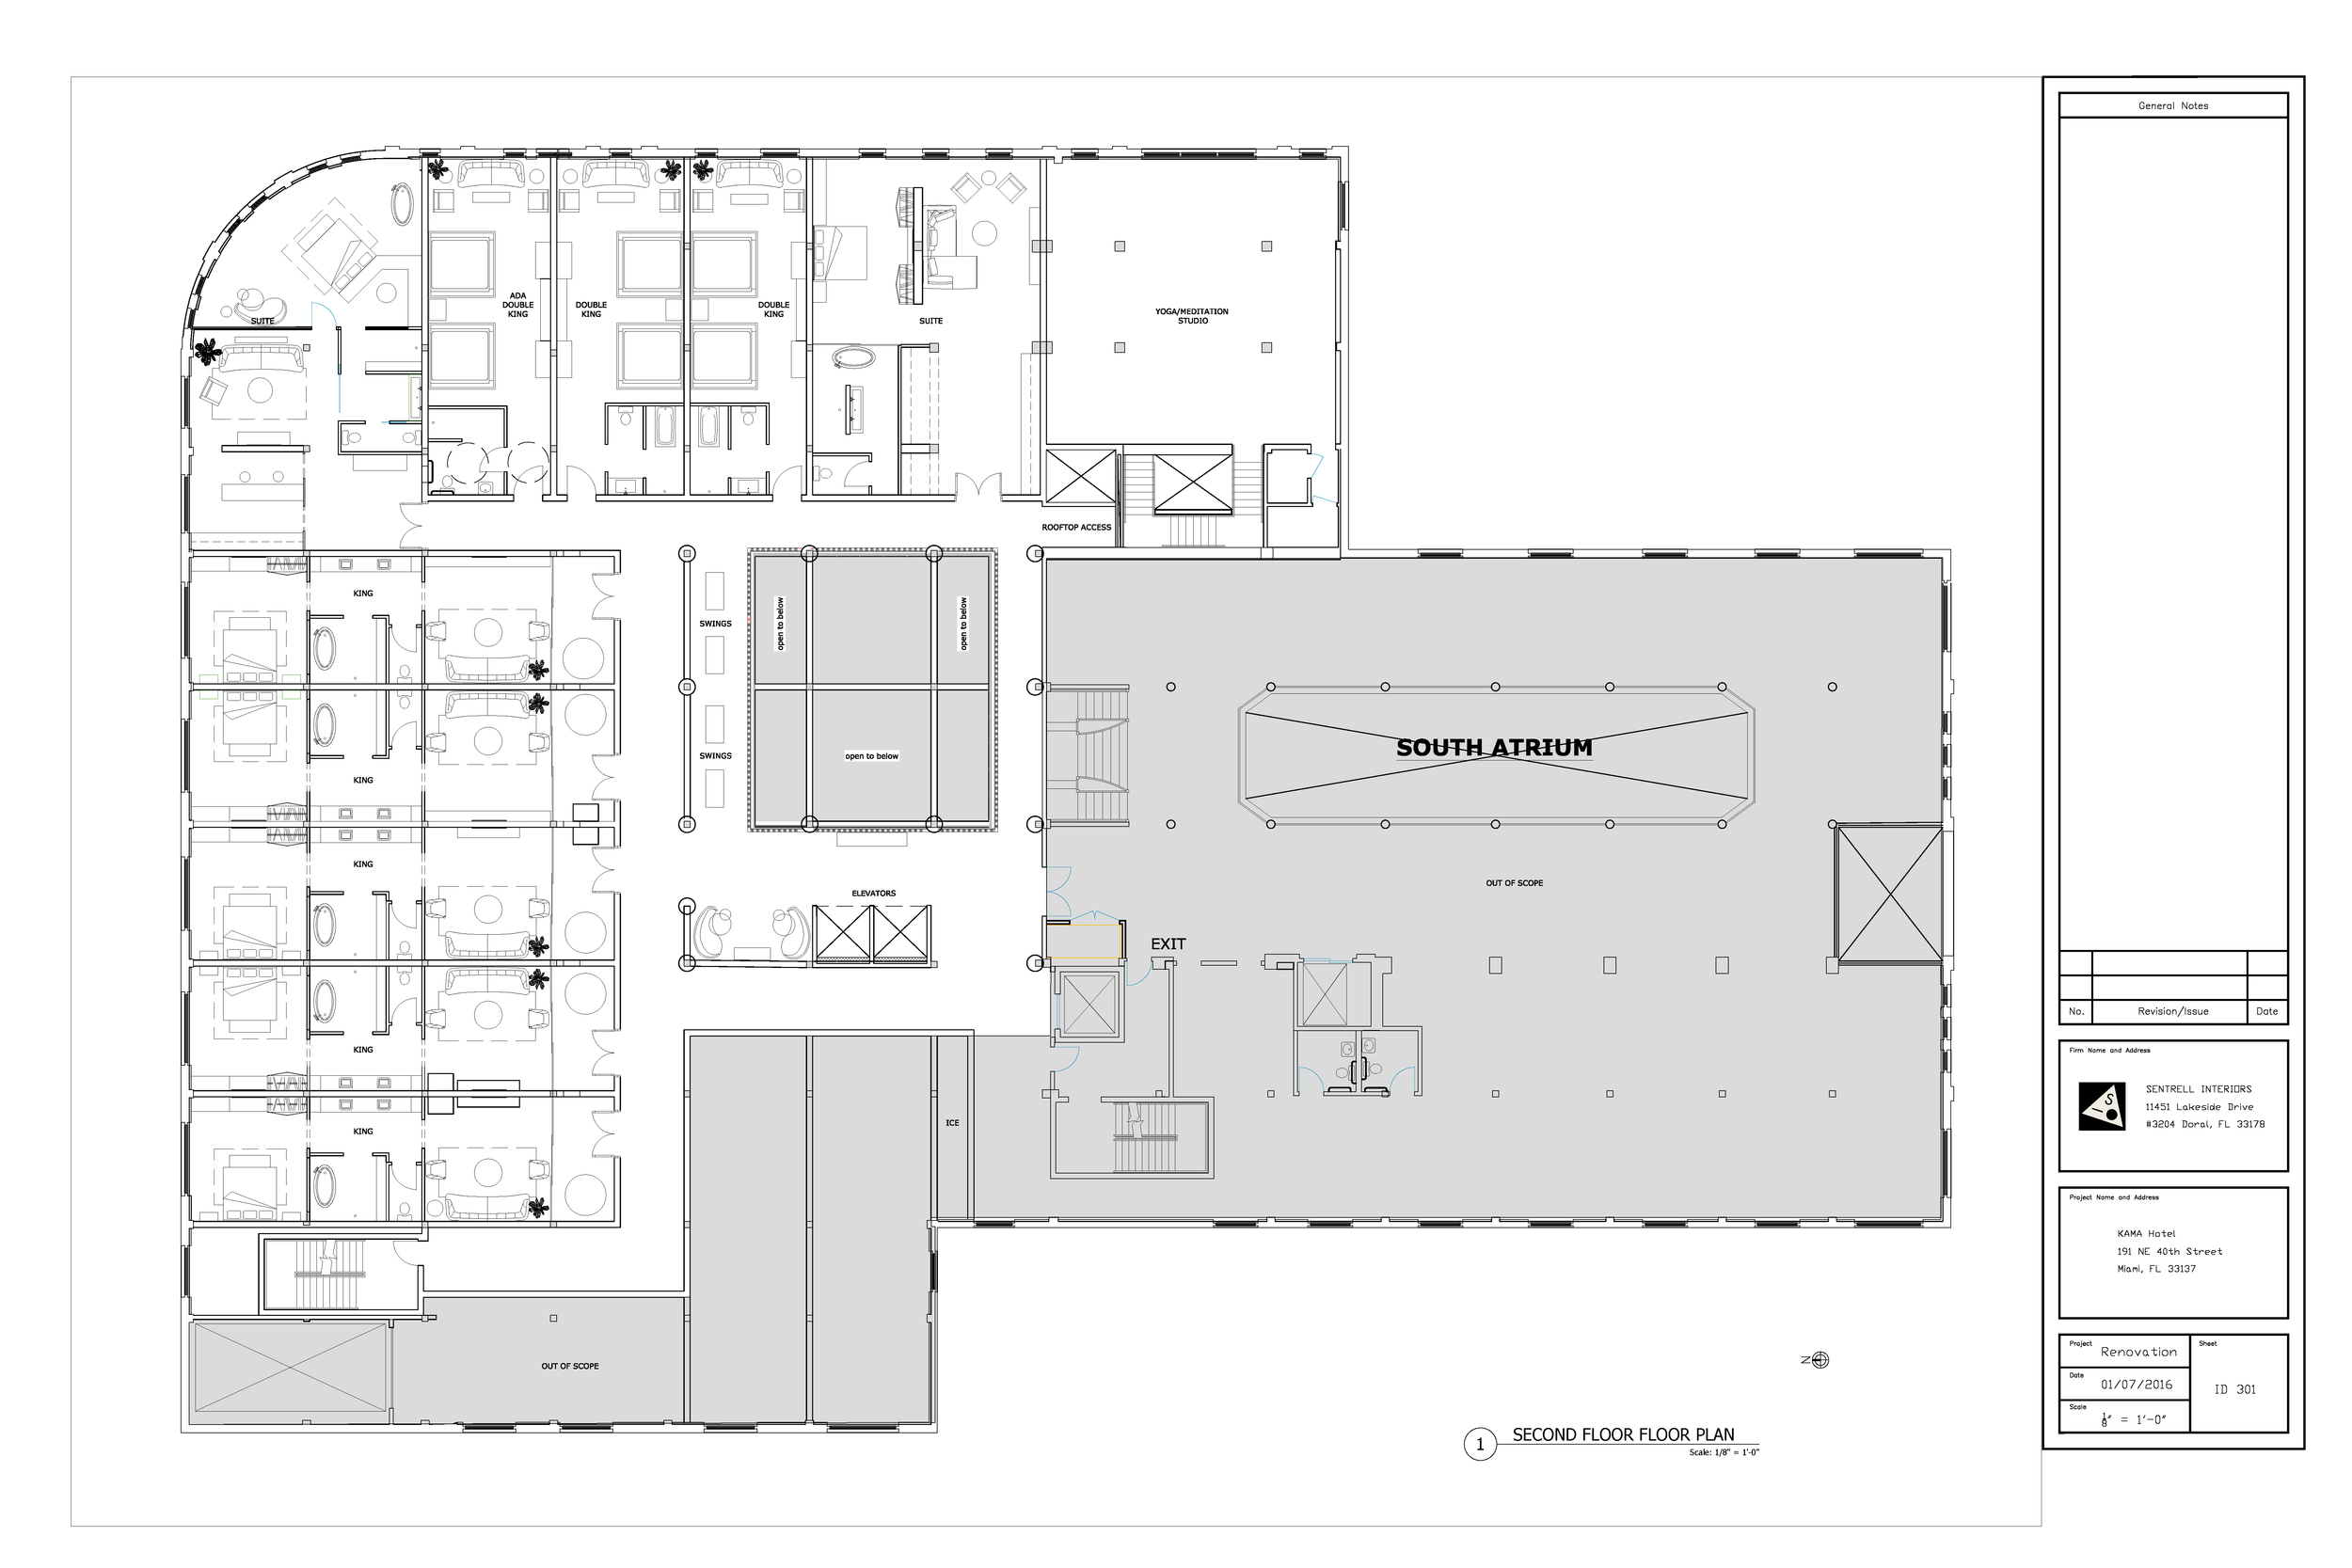 ID 301 Second Floor Floor Plan.png